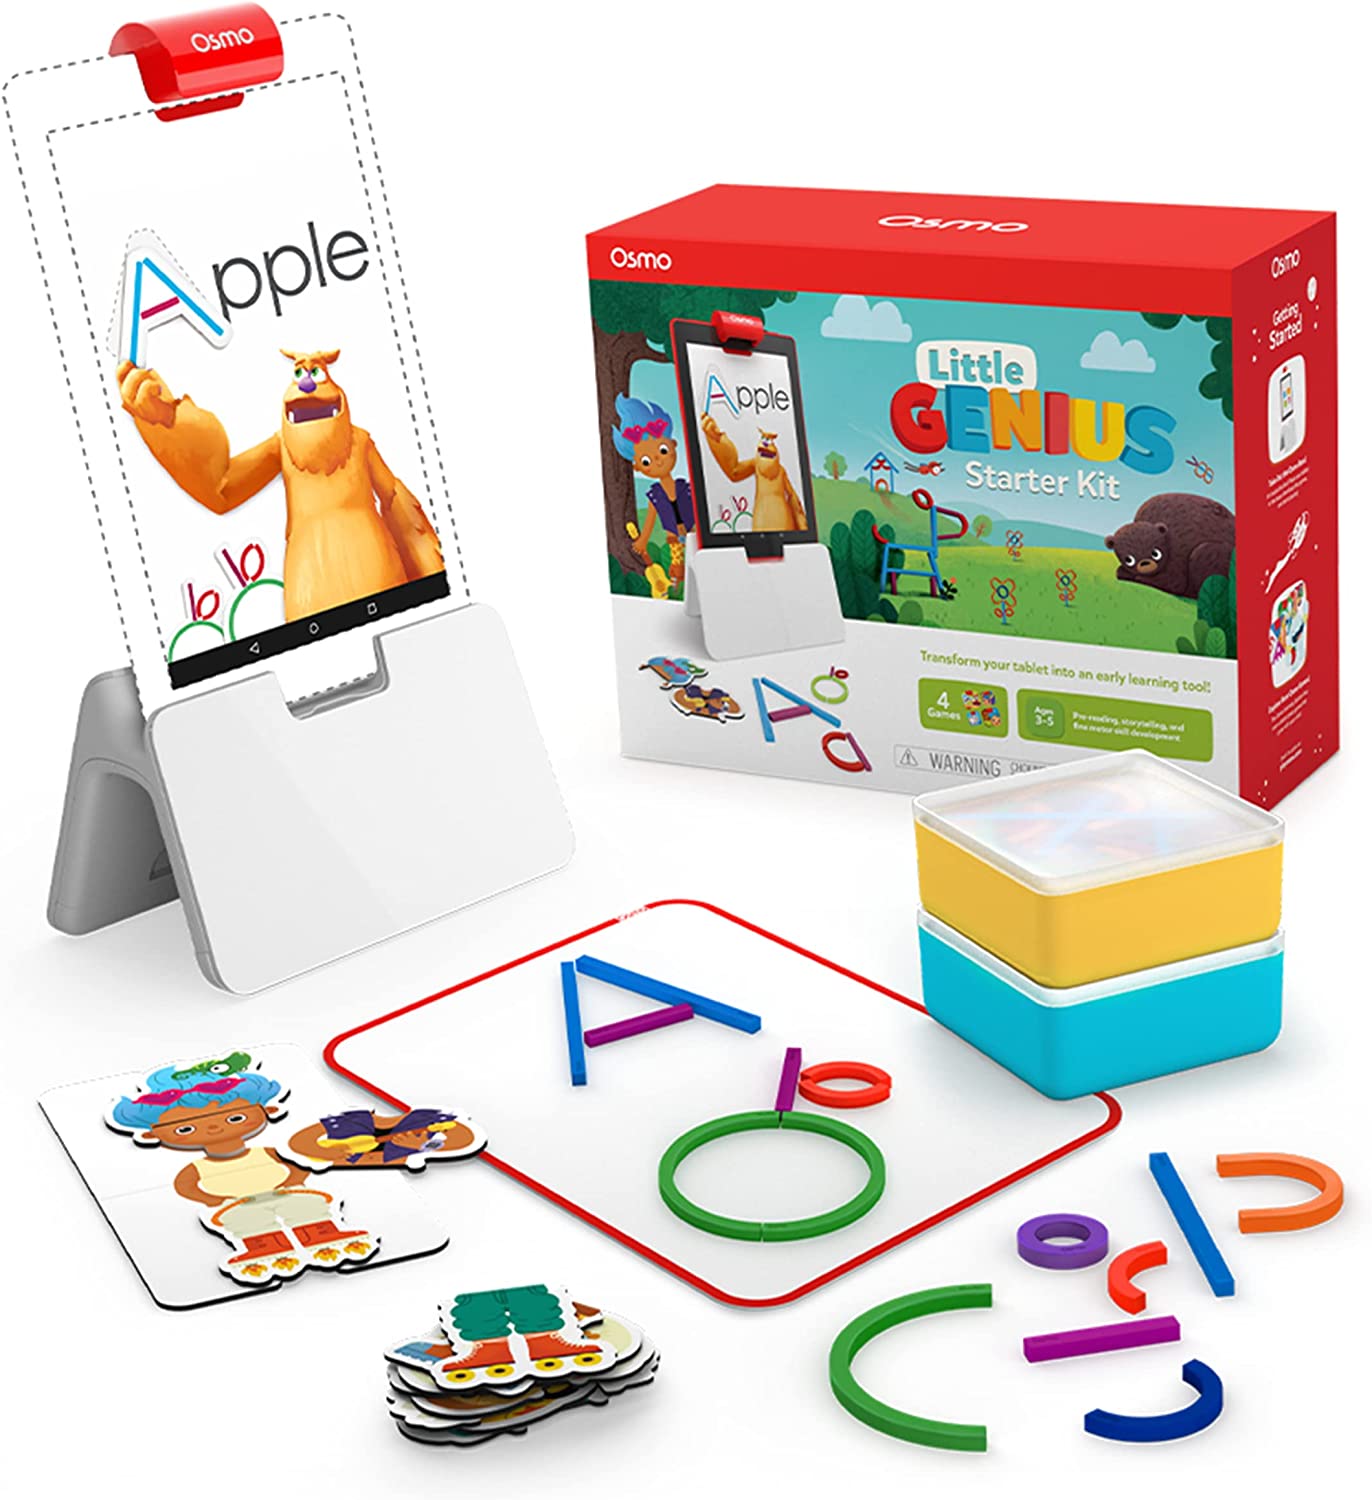 Osmo Little Genius Starter Kits On Sale On Amazon!